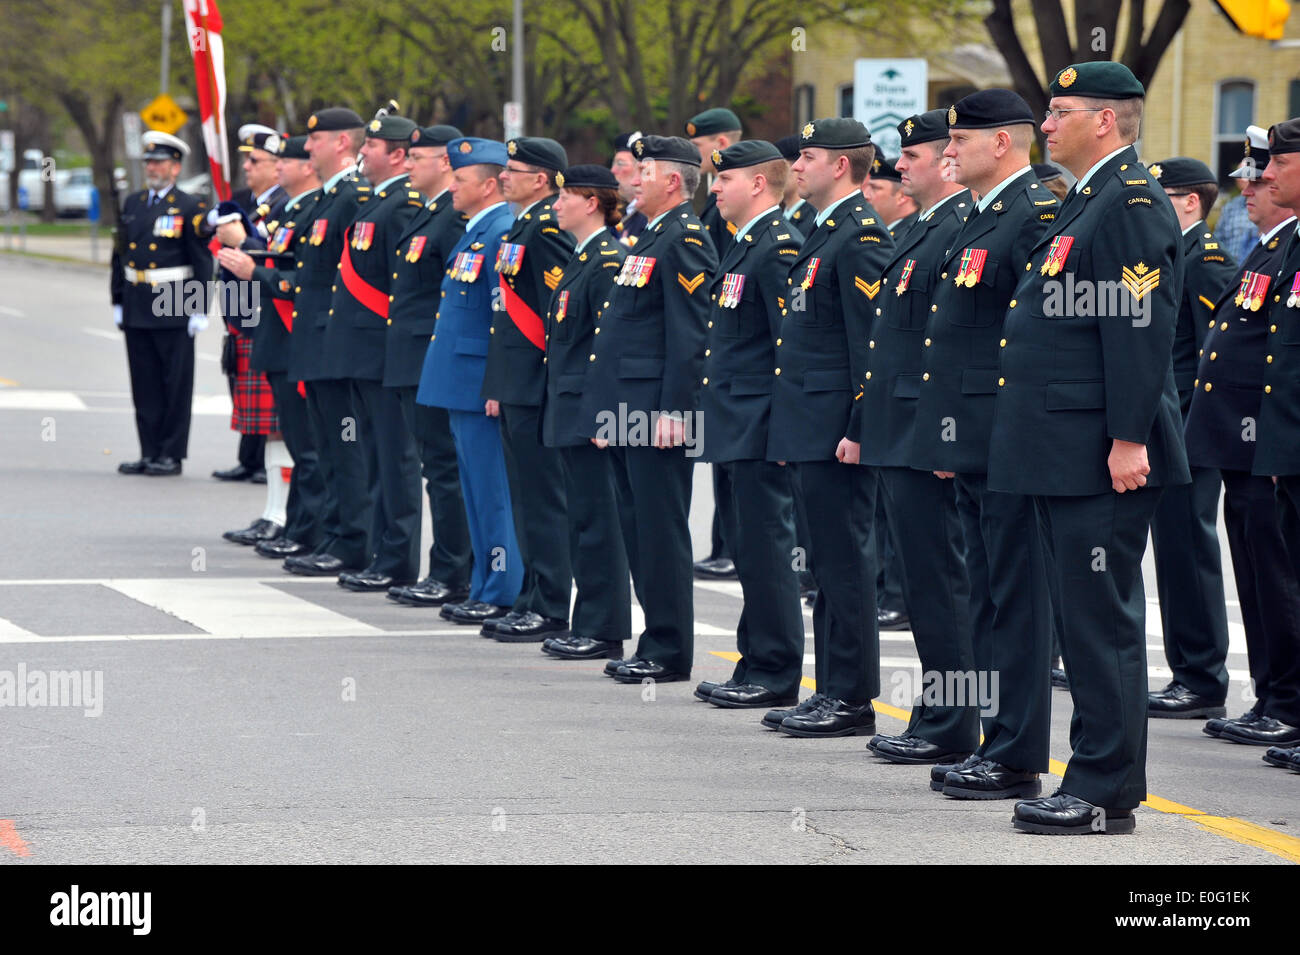 Immagini dalla Canadian National Day di onorare un evento da ricordare i canadesi che sono morti in Afghanistan conflitto. Foto Stock